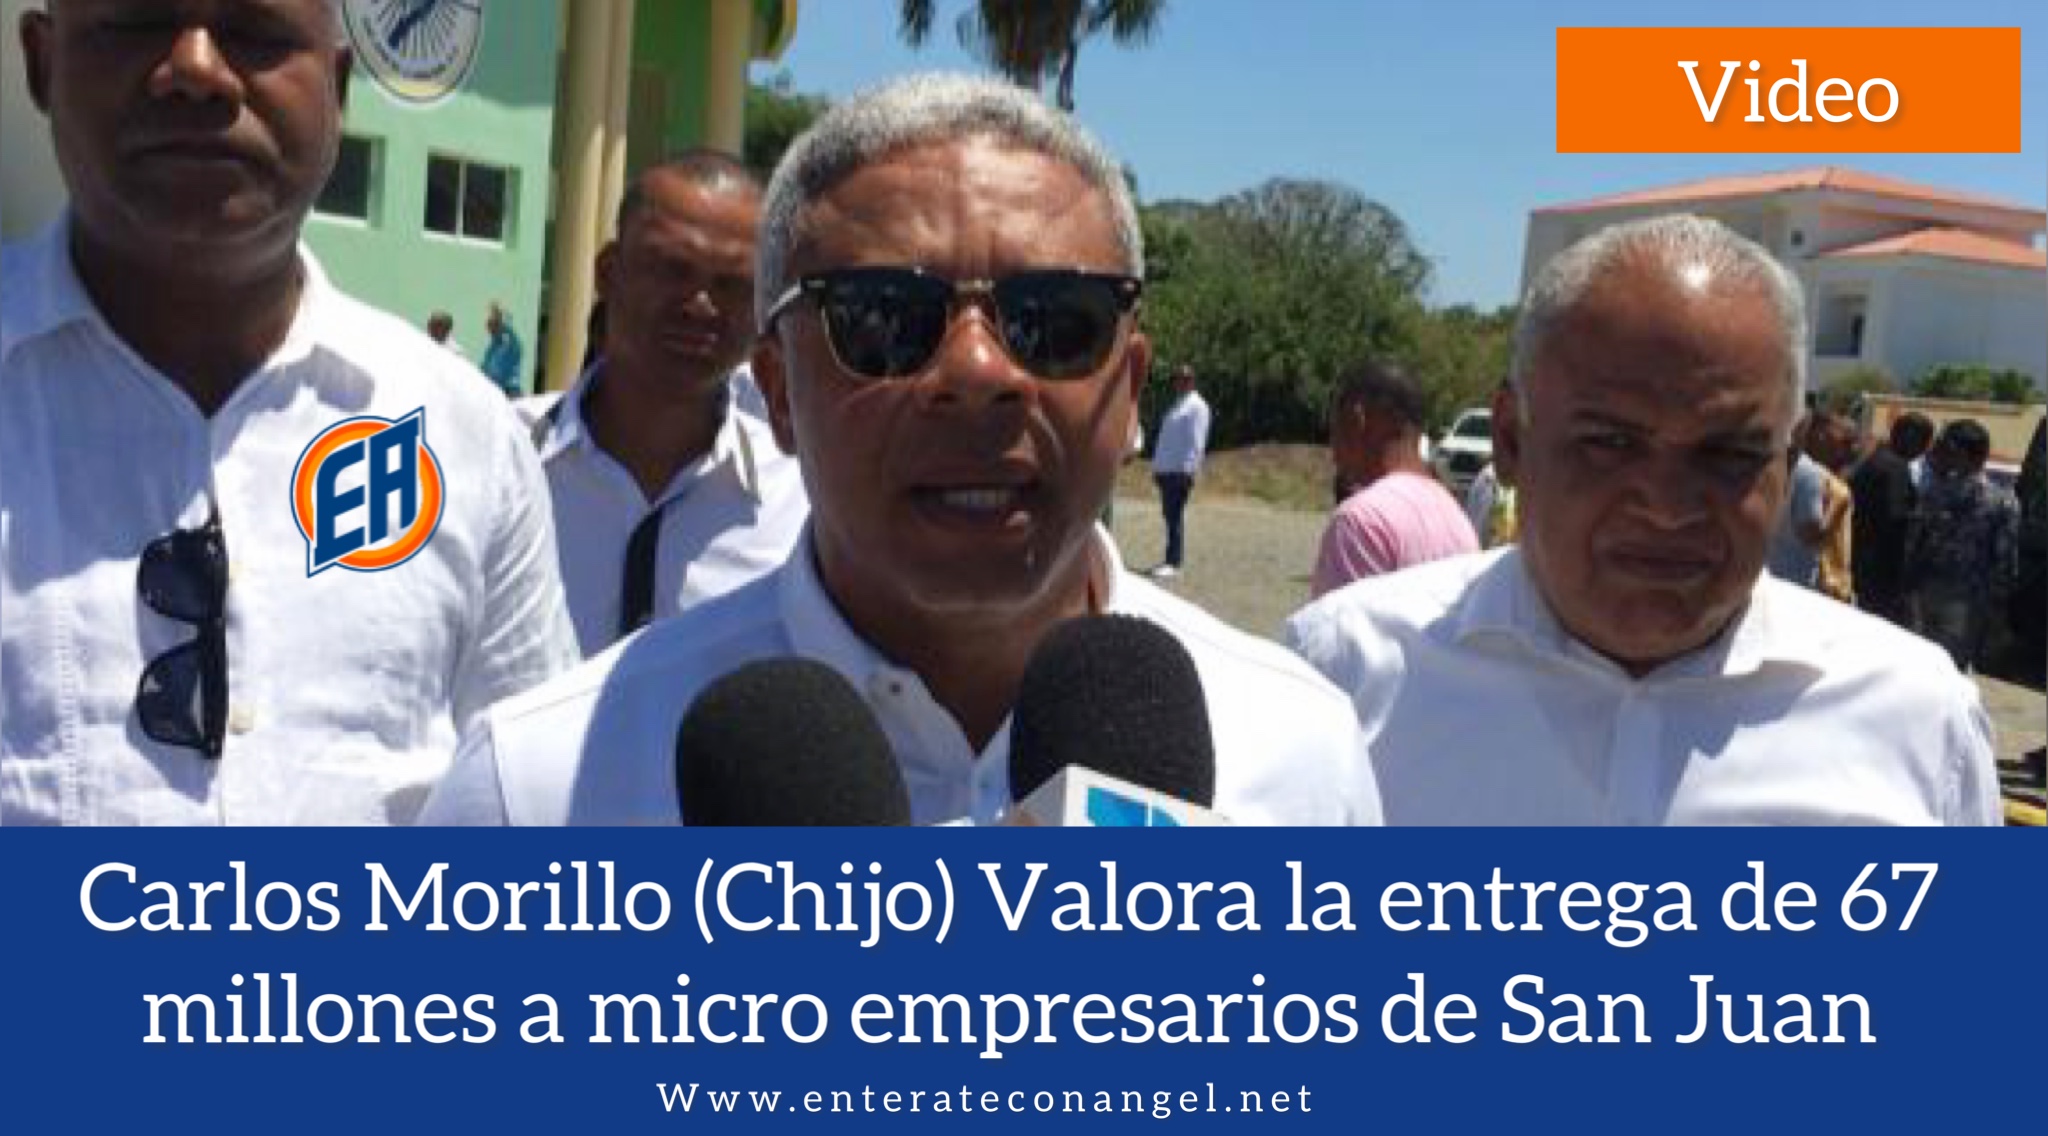 Carlos Morillo (Chijo) Valora la entrega de 67 millones a micro empresarios de San Juan